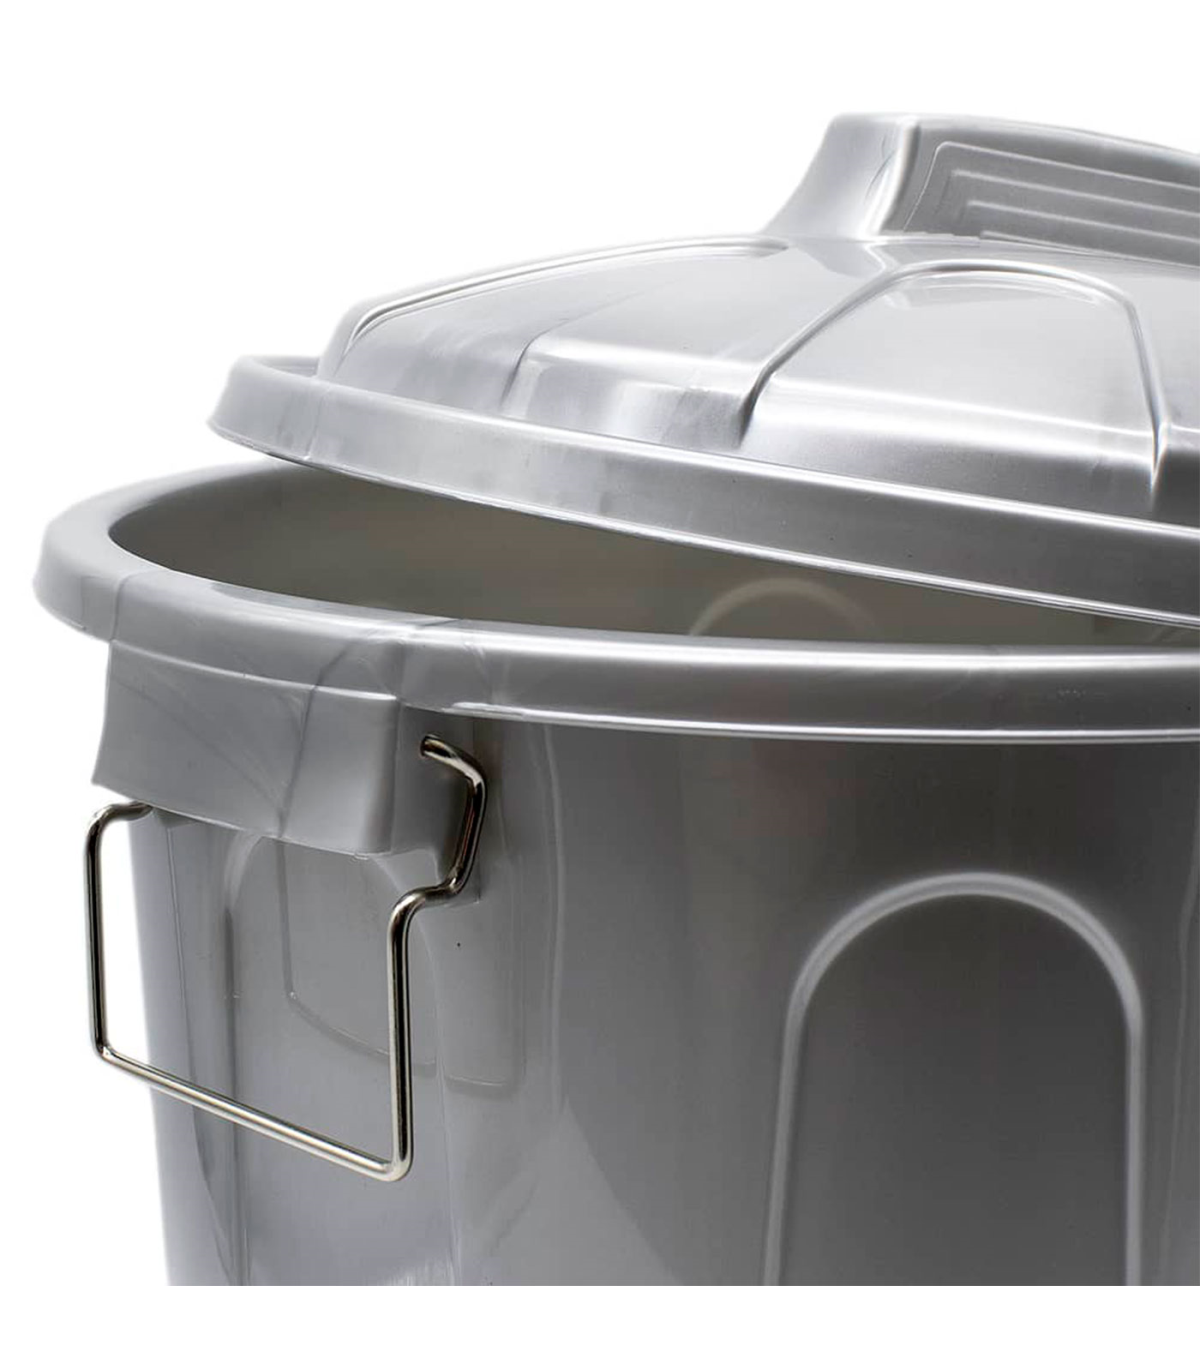 Tradineur - Cubo de basura, plástico, 21 litros, incluye asas metálicas y  tapa, resistente, contenedor de residuos, papelera, re